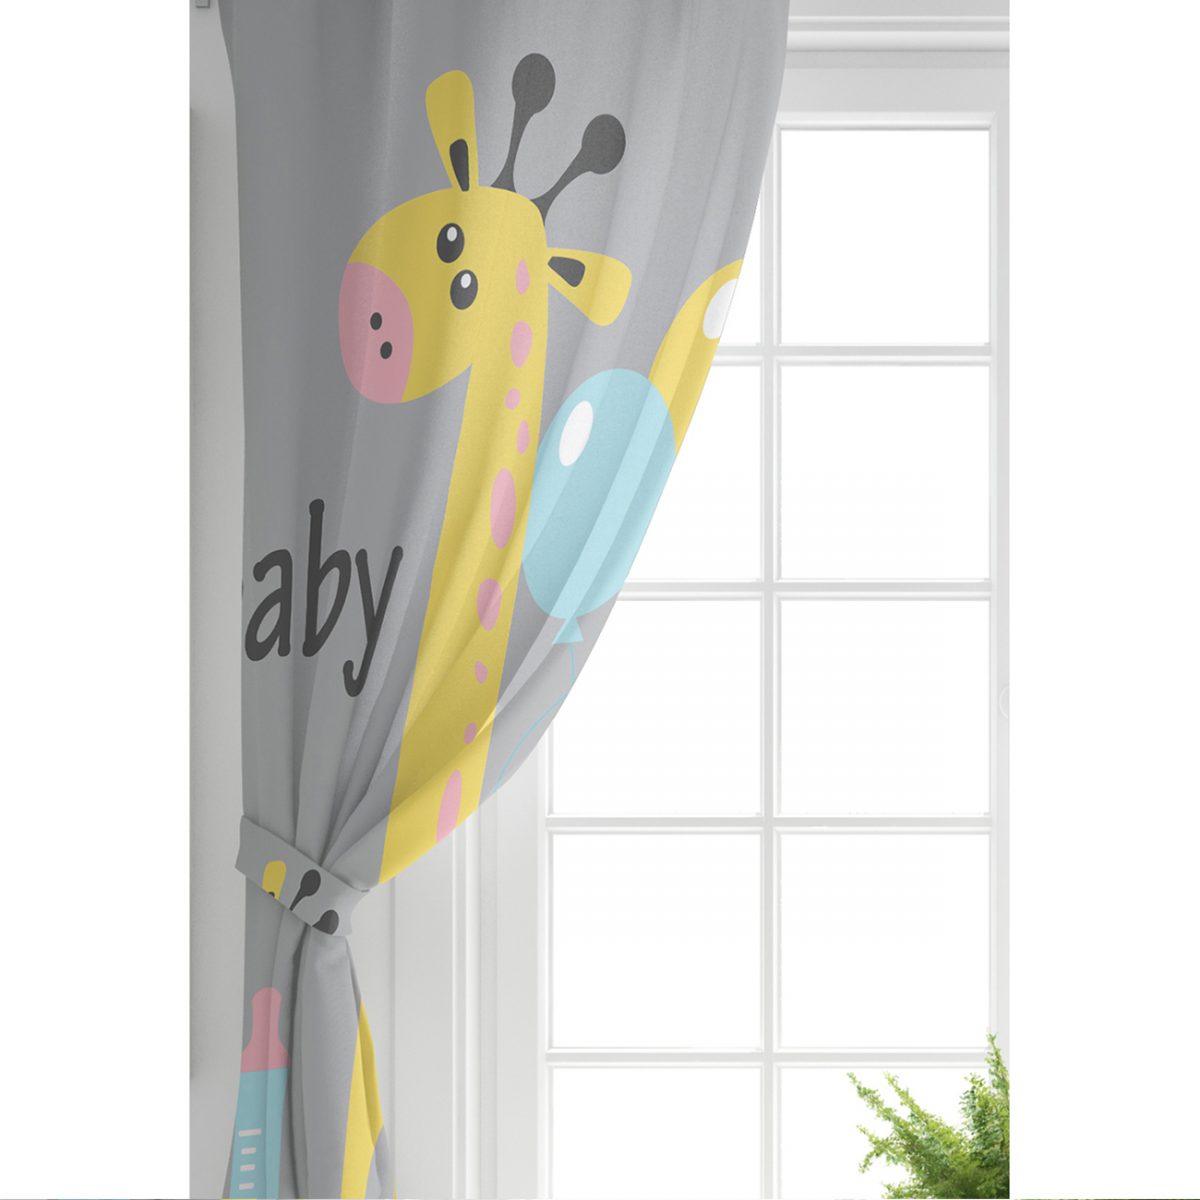 Gri Zeminde Balon ve Zürafa Desenli Özel Tasarım Bebek Odası Fon Perde Realhomes